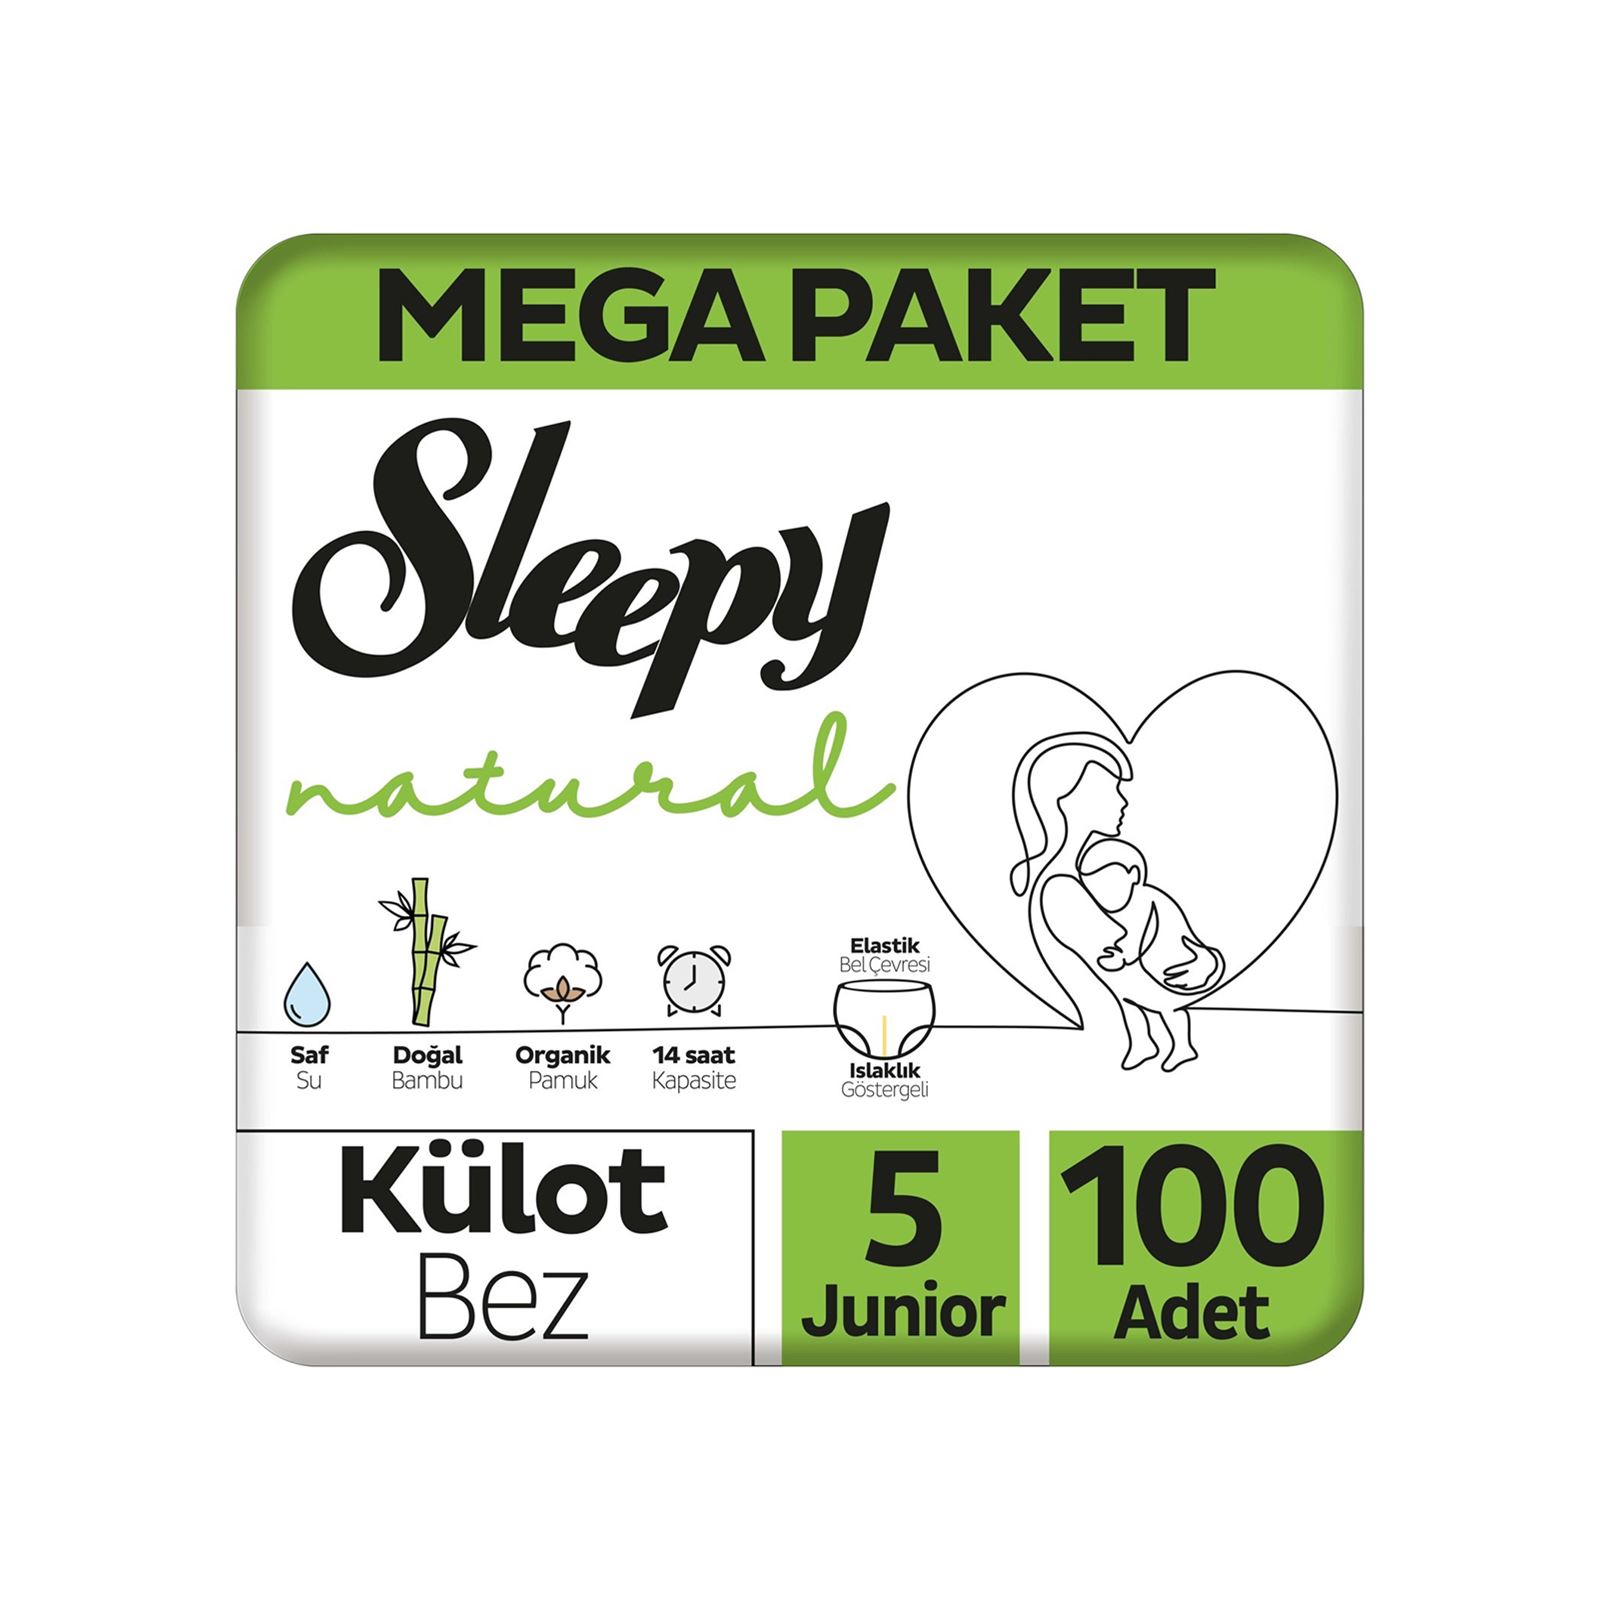 Sleepy Külot Bez Mega Paket 5 Numara Junıor 100 Adet